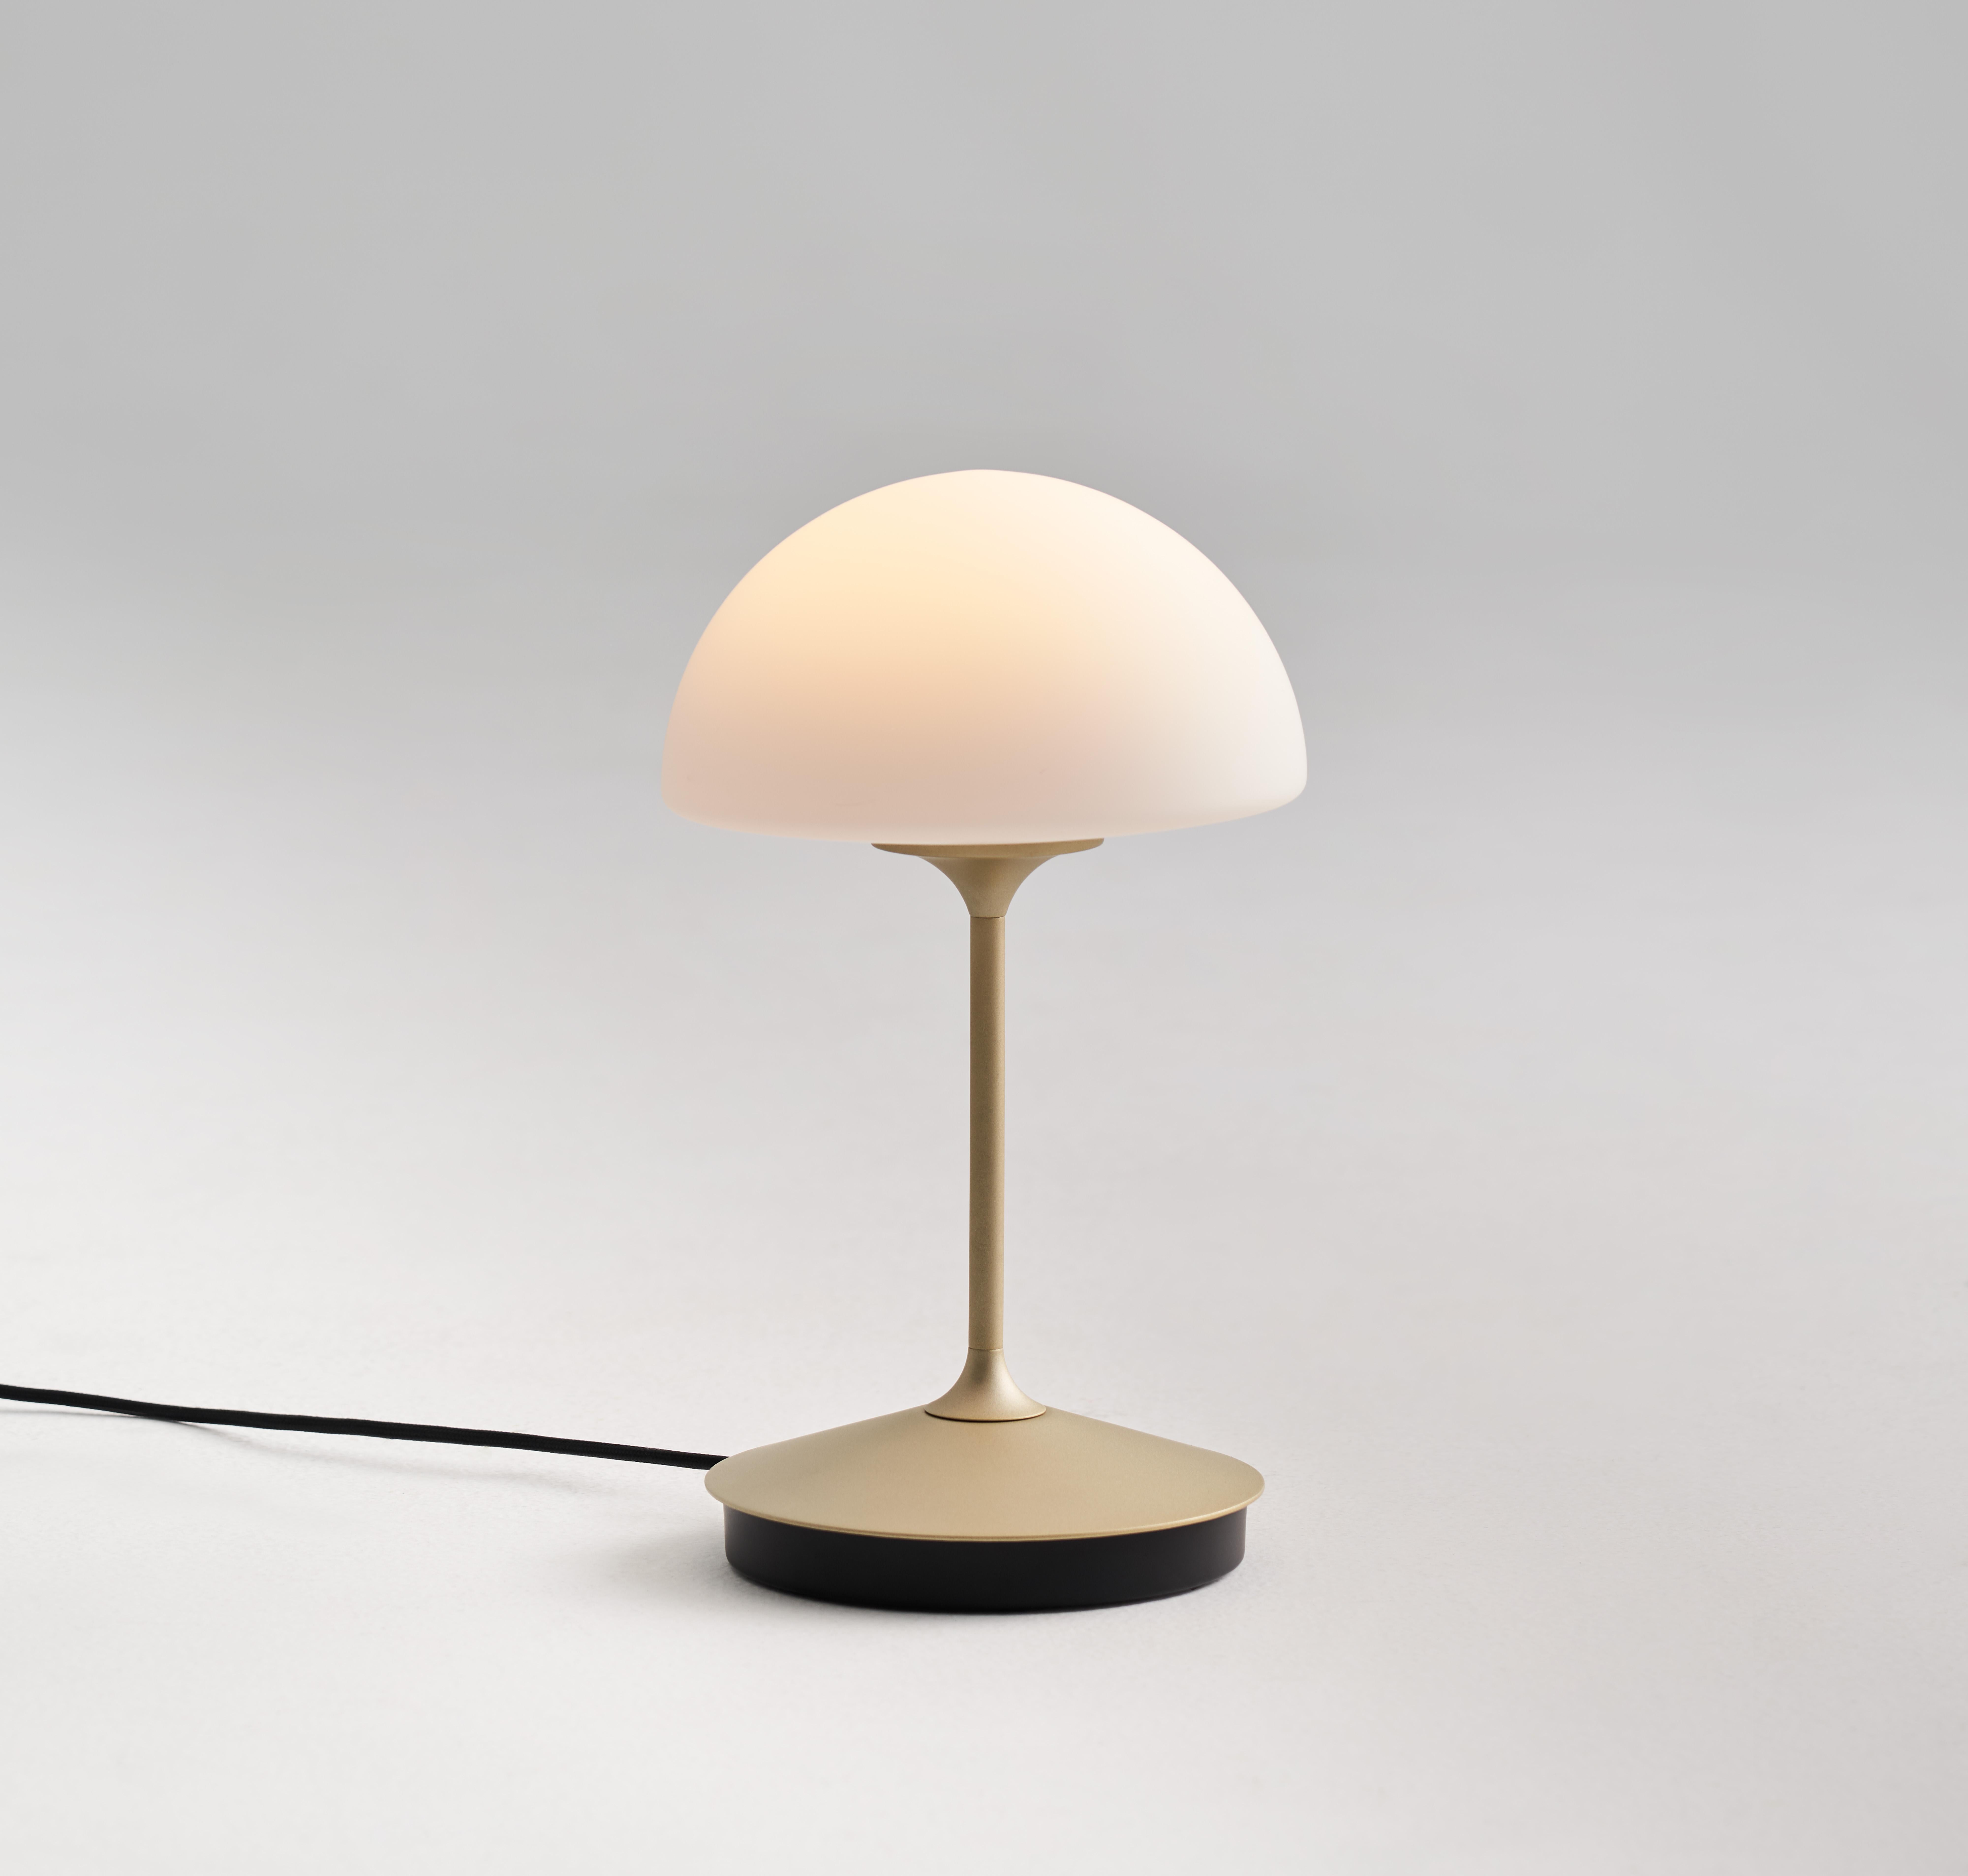 Le Pensee est une version raffinée et contemporaine d'une silhouette intemporelle. Avec un profil classique et un design compact, la nouvelle lampe de table Pensee offre la meilleure expérience lumineuse à ce jour. Disponible à la fois comme lampe